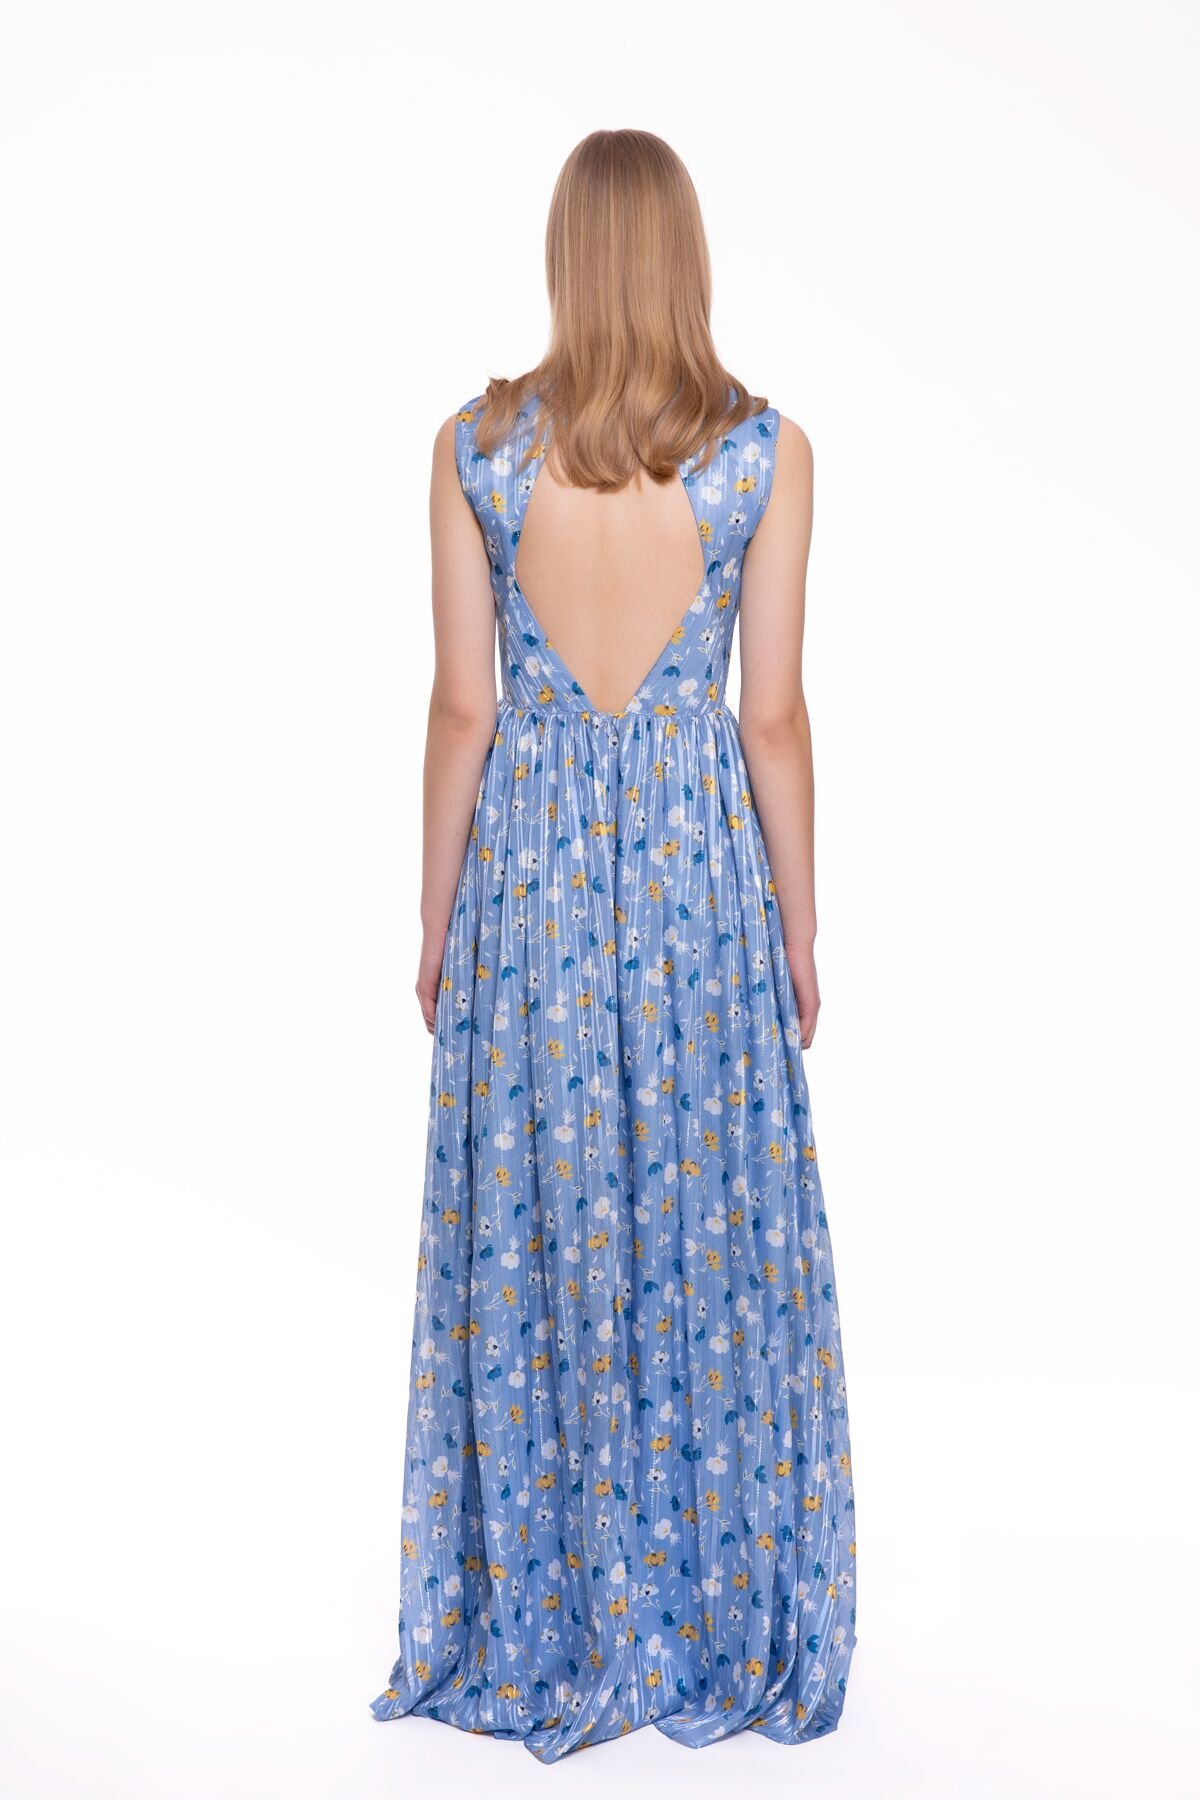 Backless Long Blue Chiffon Dress